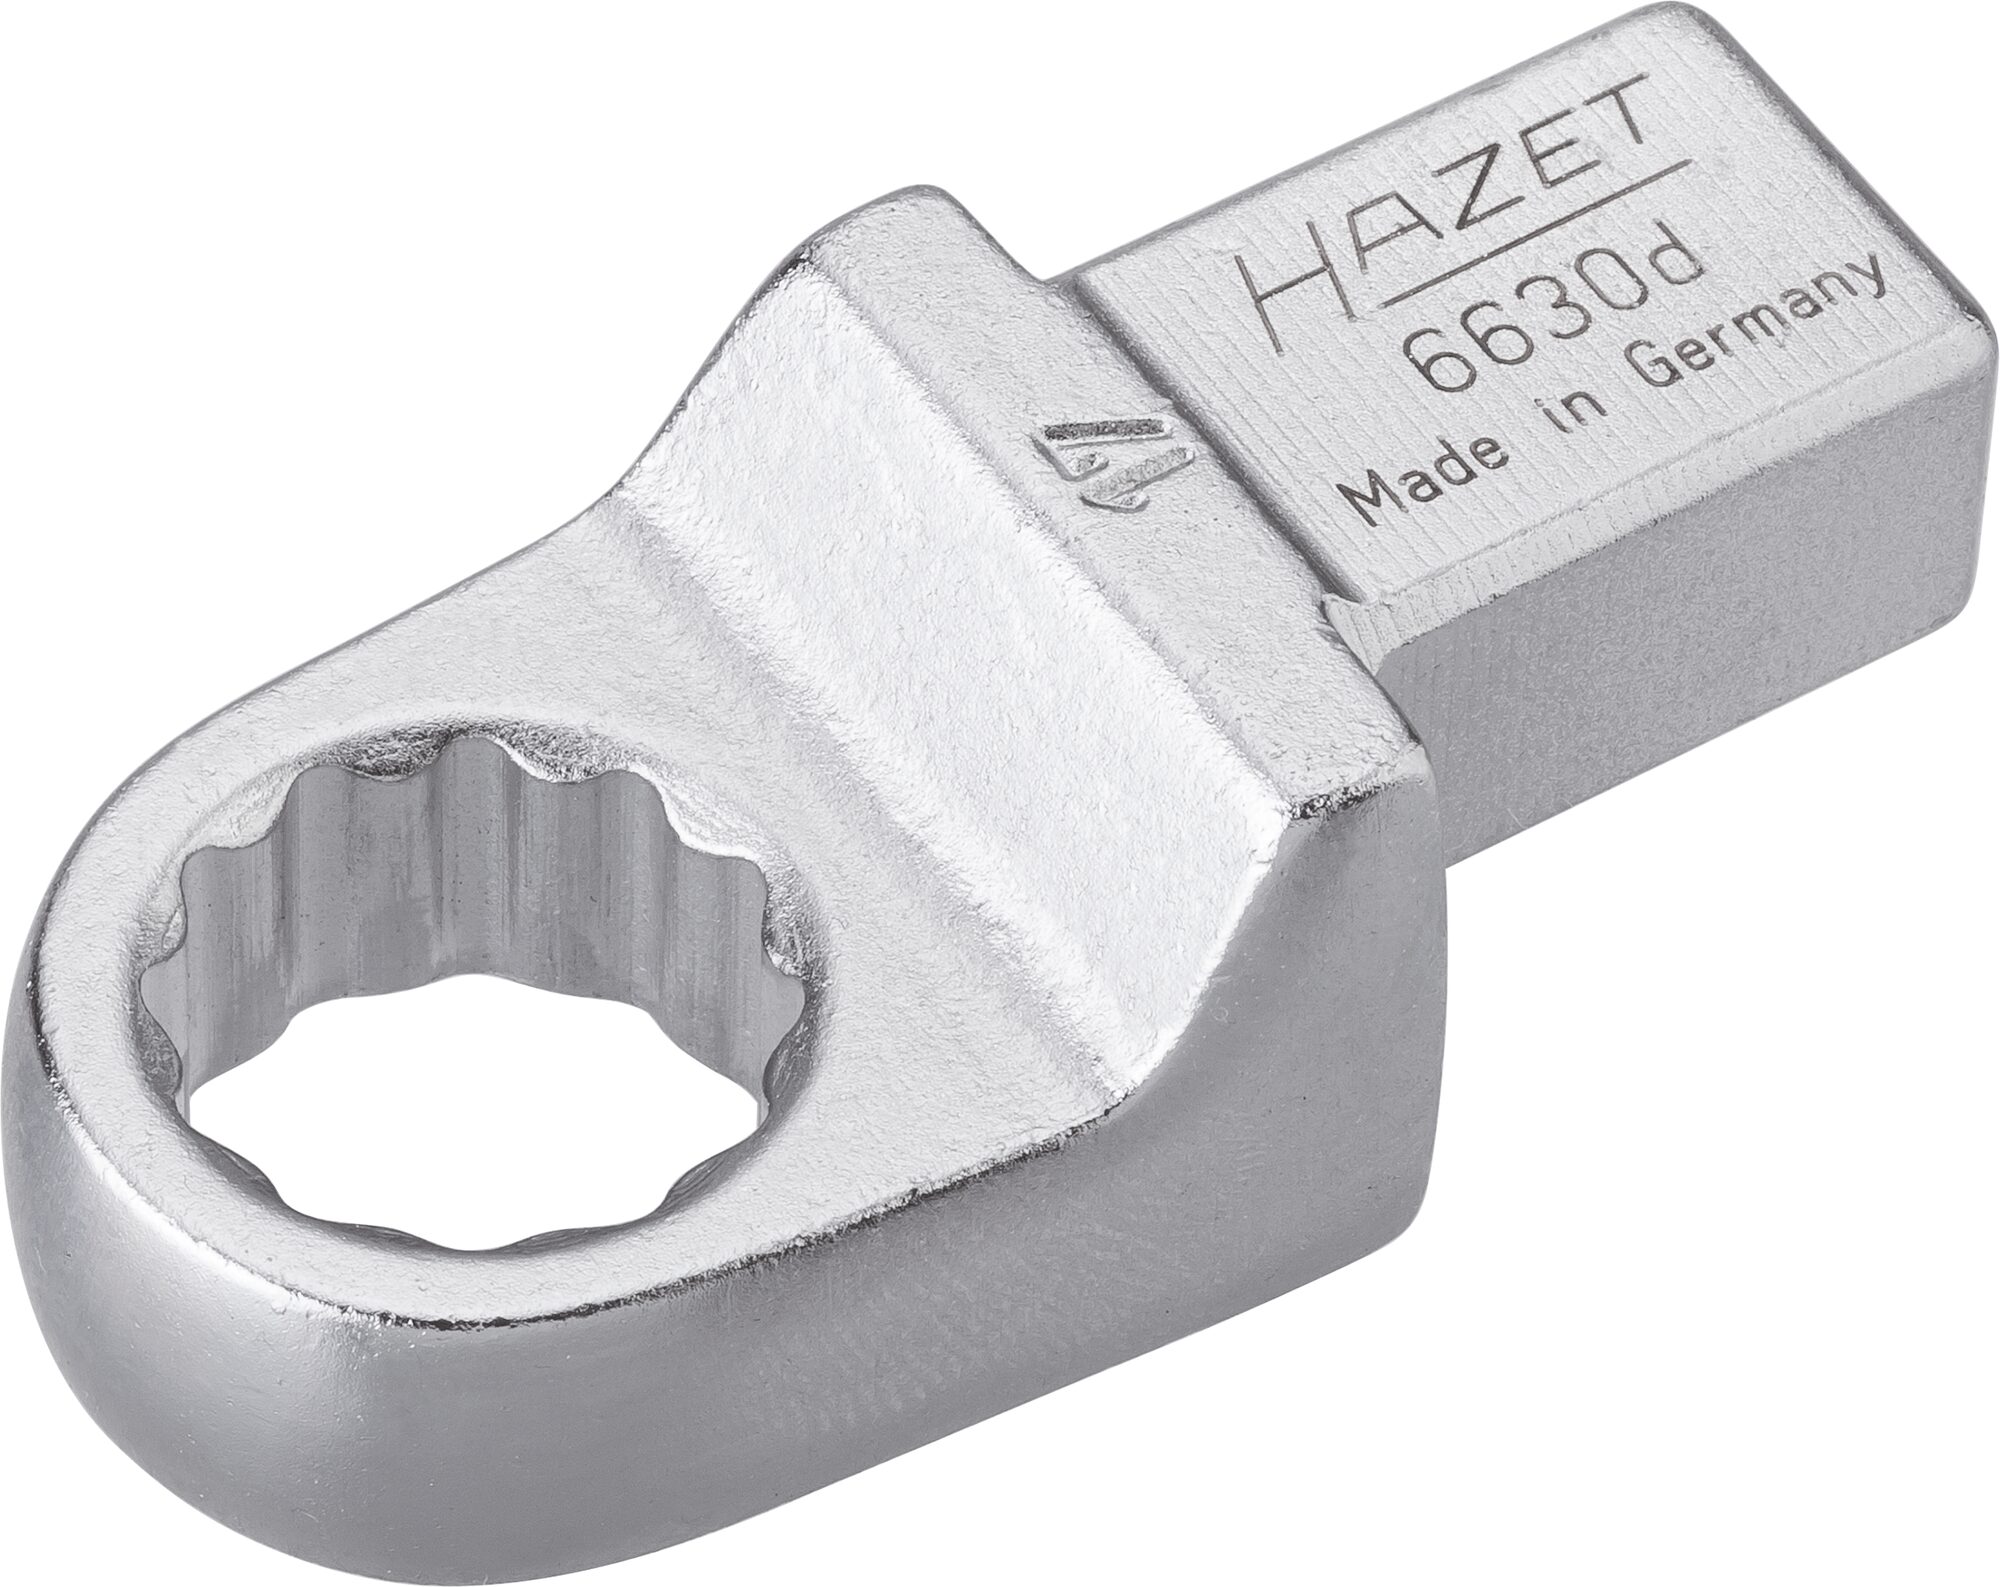 HAZET Einsteck-Ringschlüssel 6630D-17 · Einsteck-Vierkant 14 x 18 mm · Außen Doppel-Sechskant-Tractionsprofil · 17 mm